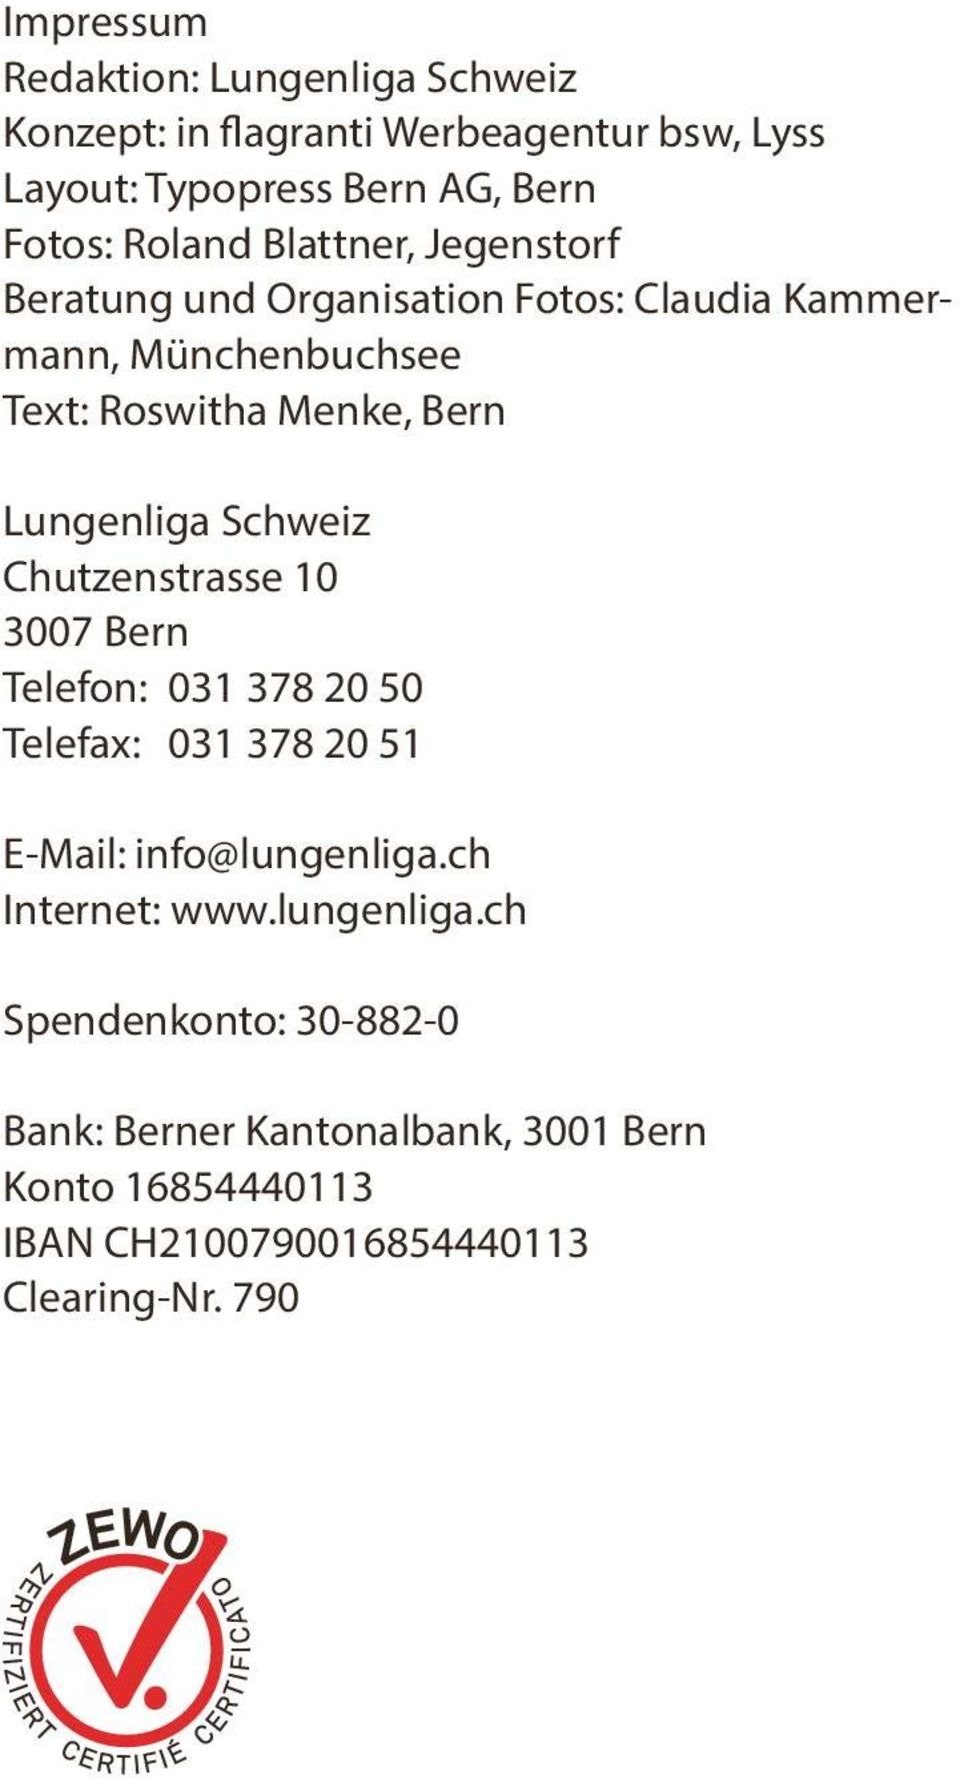 Lungenliga Schweiz Chutzenstrasse 10 3007 Bern Telefon: 031 378 20 50 Telefax: 031 378 20 51 E-Mail: info@lungenliga.